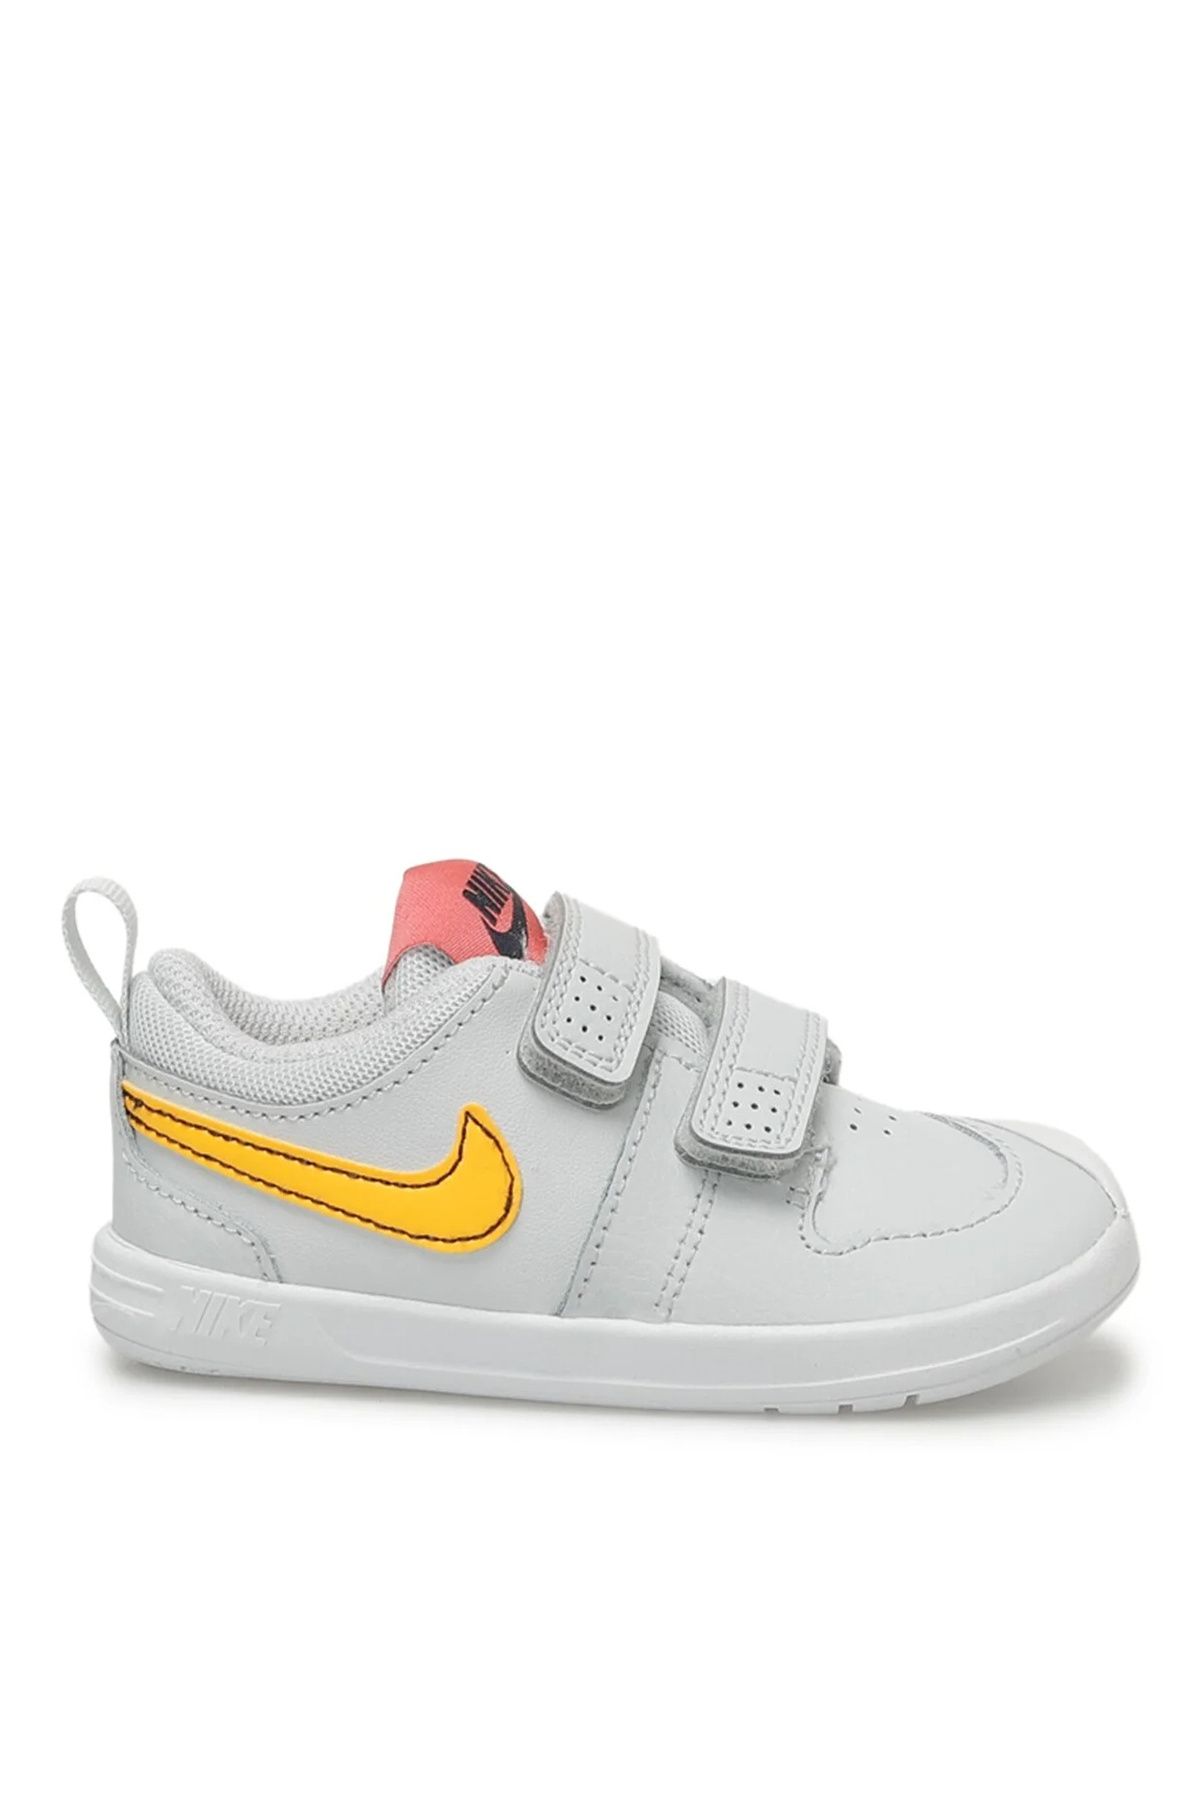 Nike Bebek Gri Yürüyüş Ayakkabısı AR4162-010 NIKE PICO 5 (TDV)